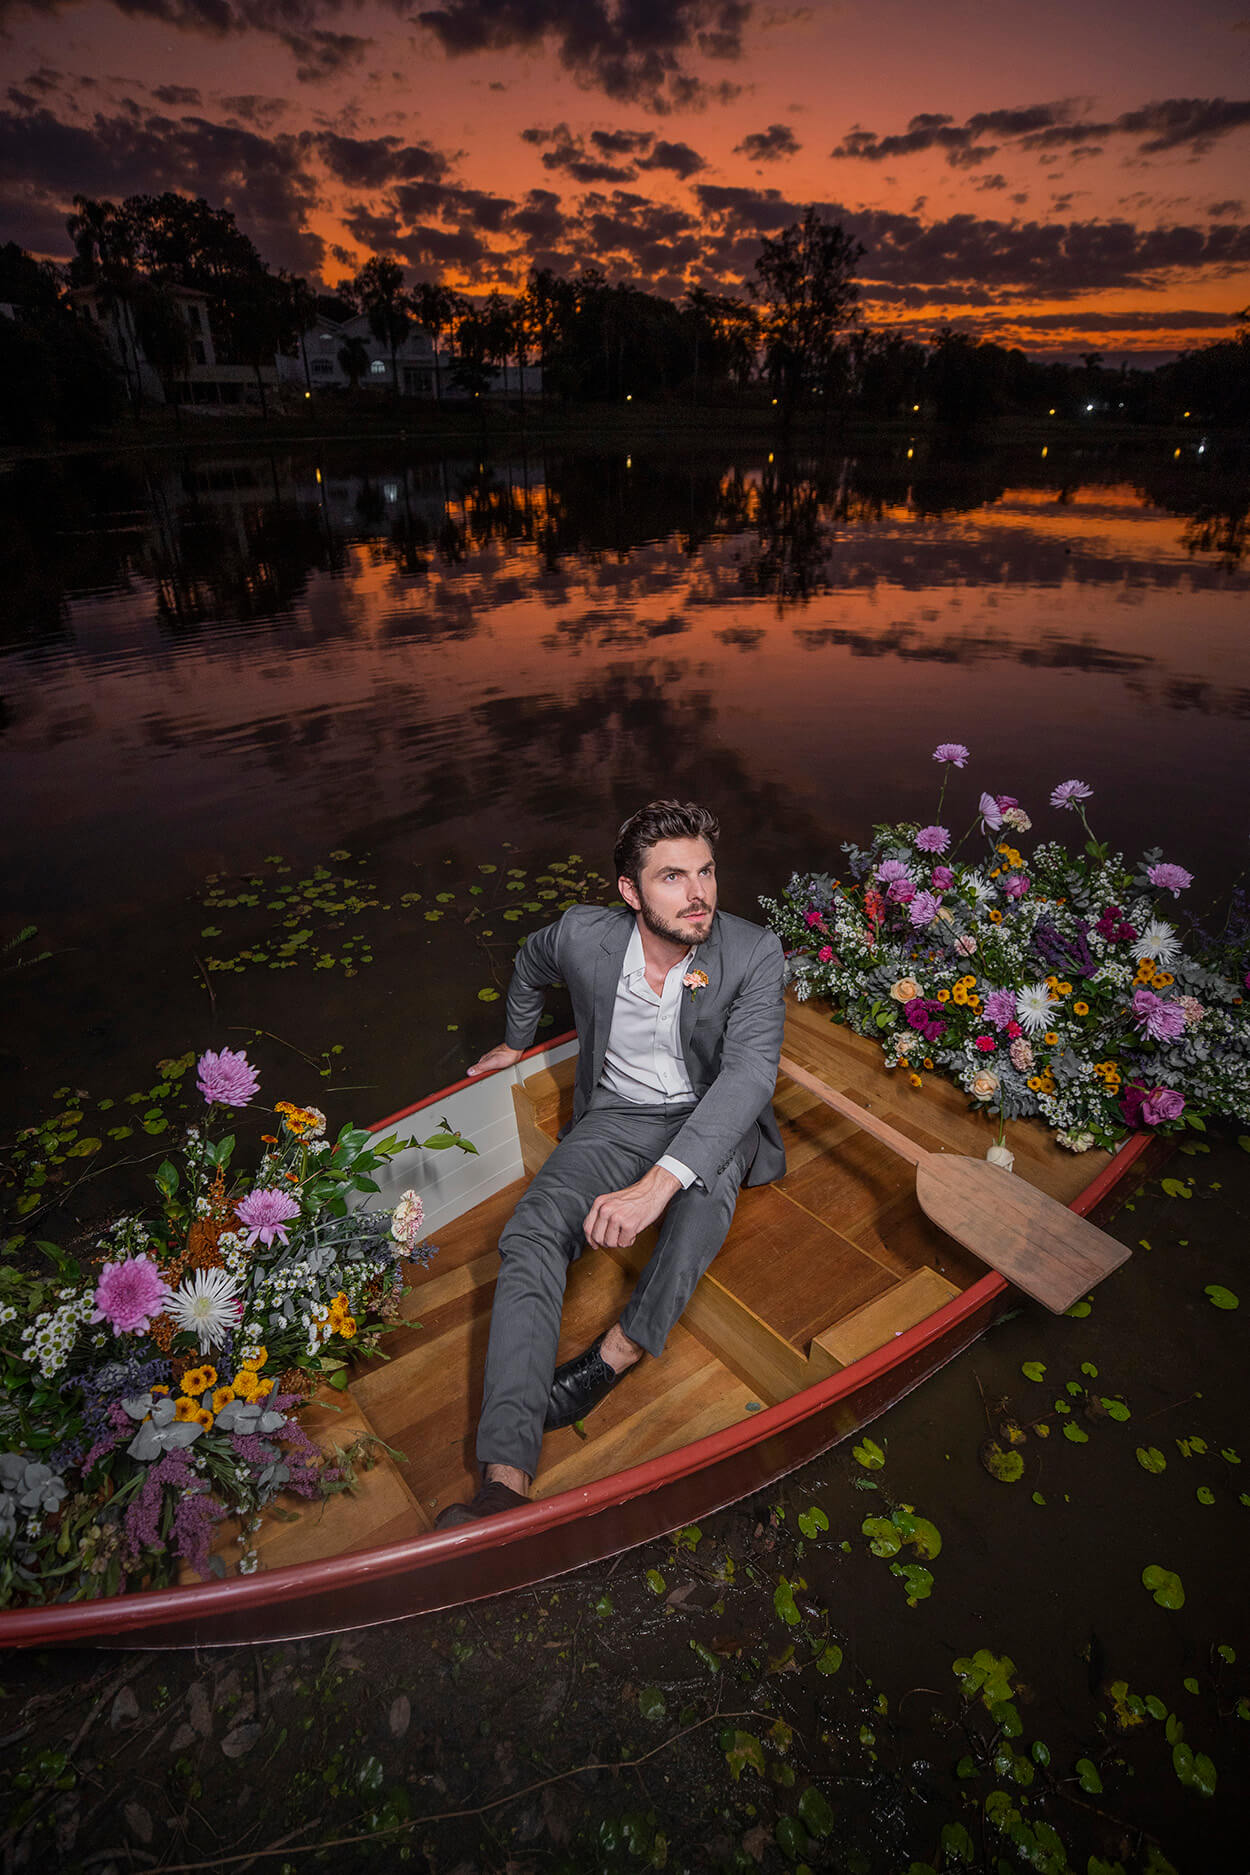 Noivo no barco com flores